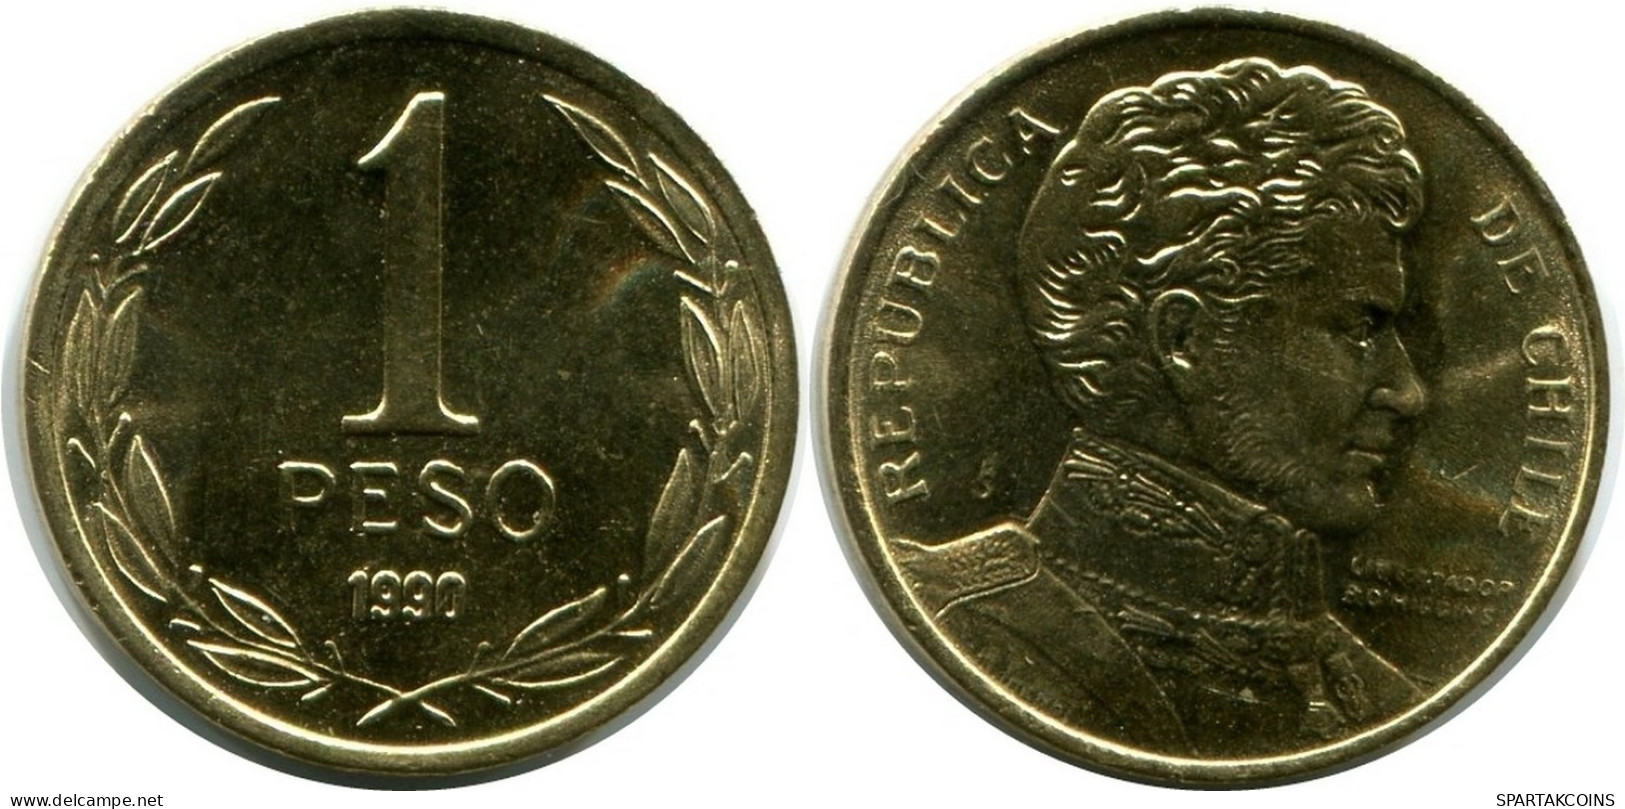 1 PESO 1990 CHILE UNC Coin #M10058.U.A - Chili